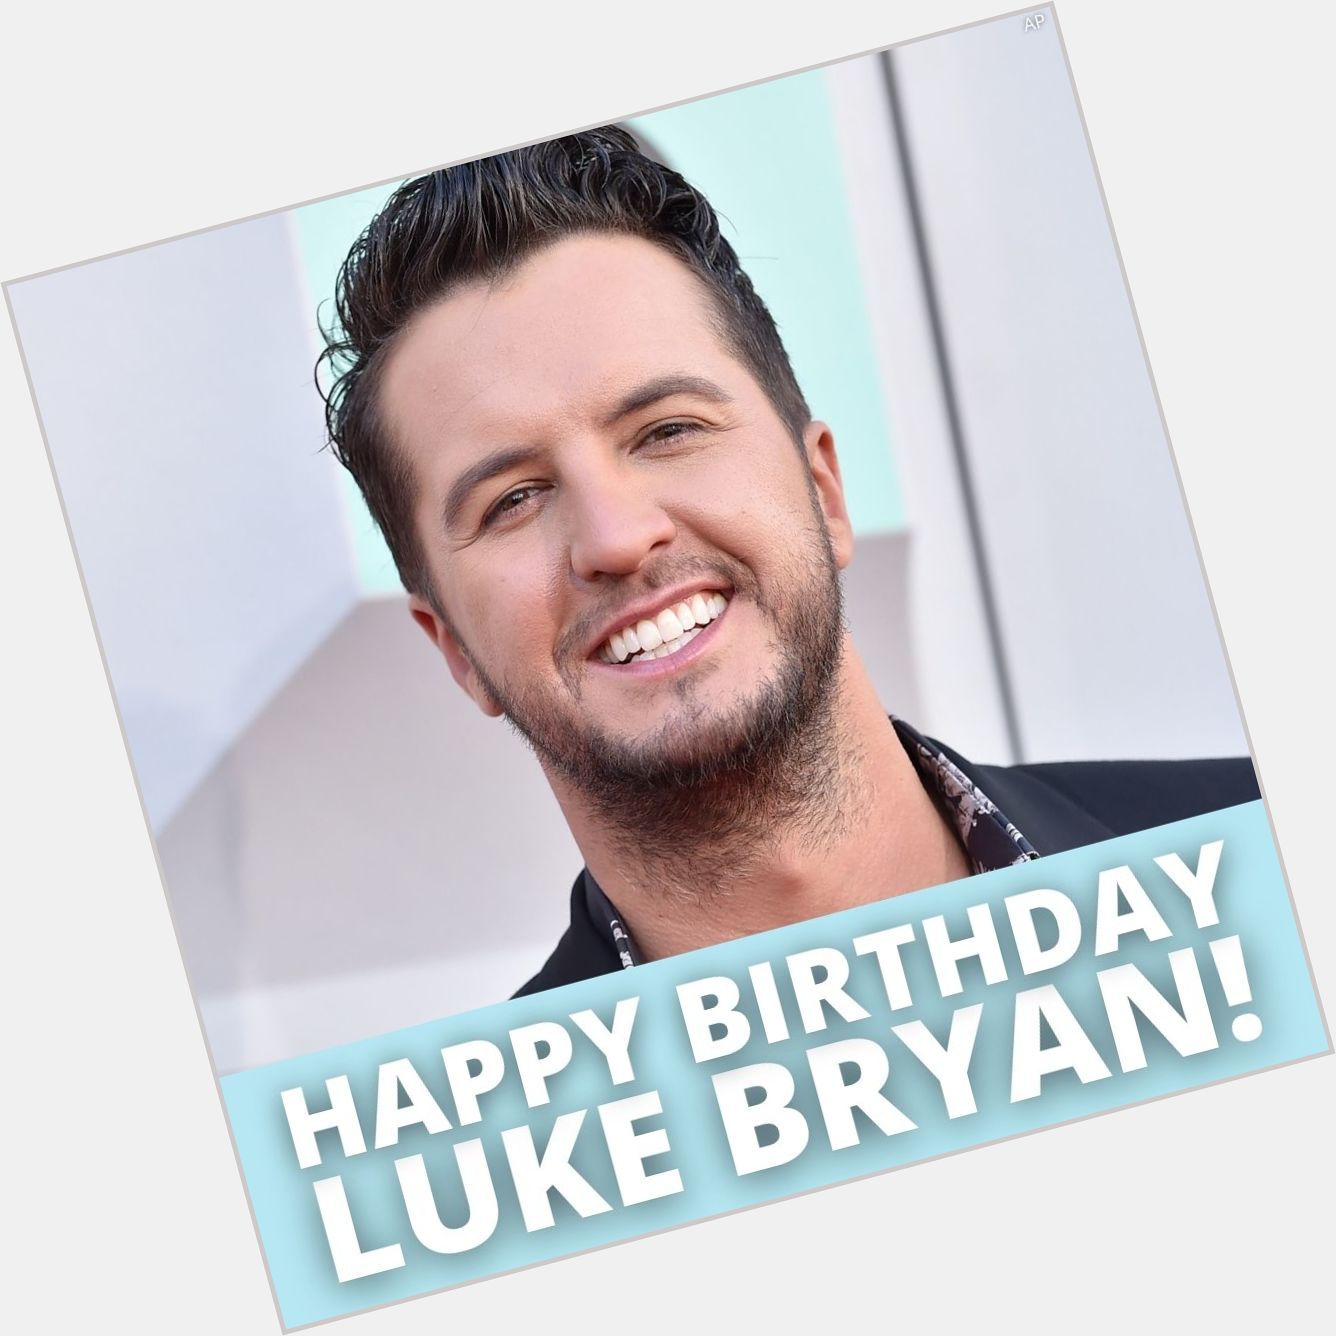 Happy 45th birthday to Luke Bryan! 